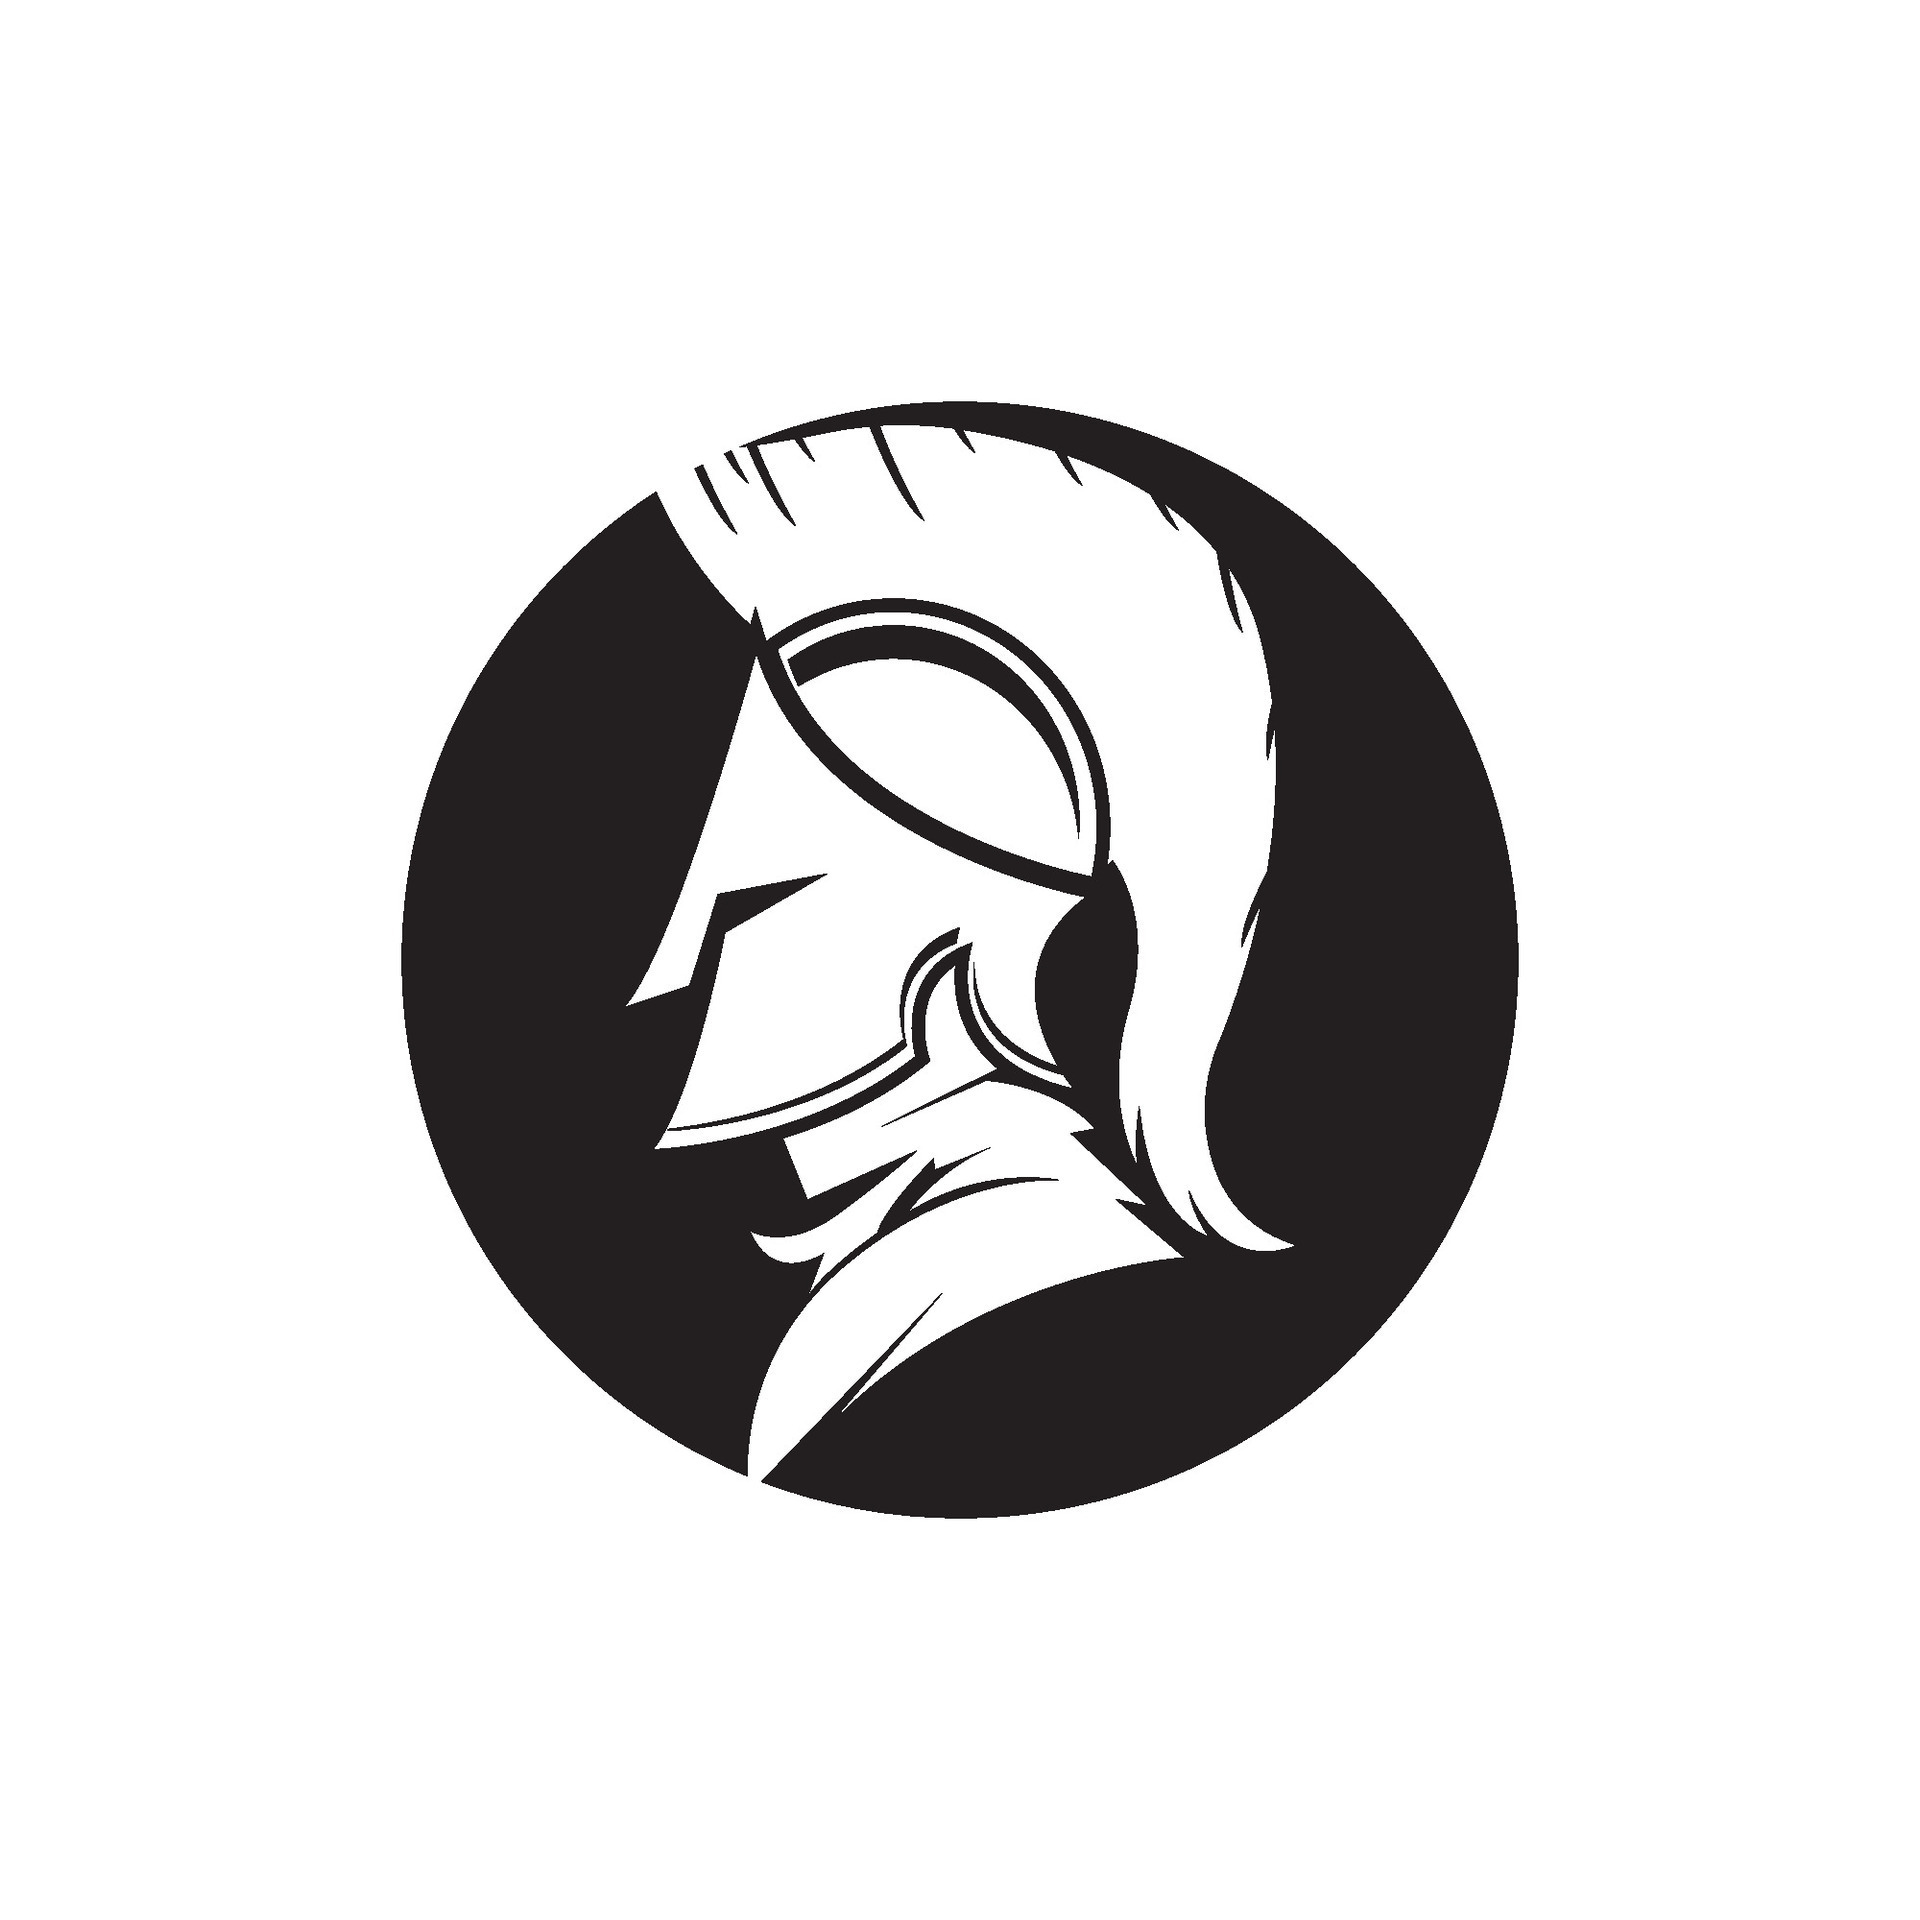 Knight helmet vector illustration for an icon, symbol or logo. knight ...